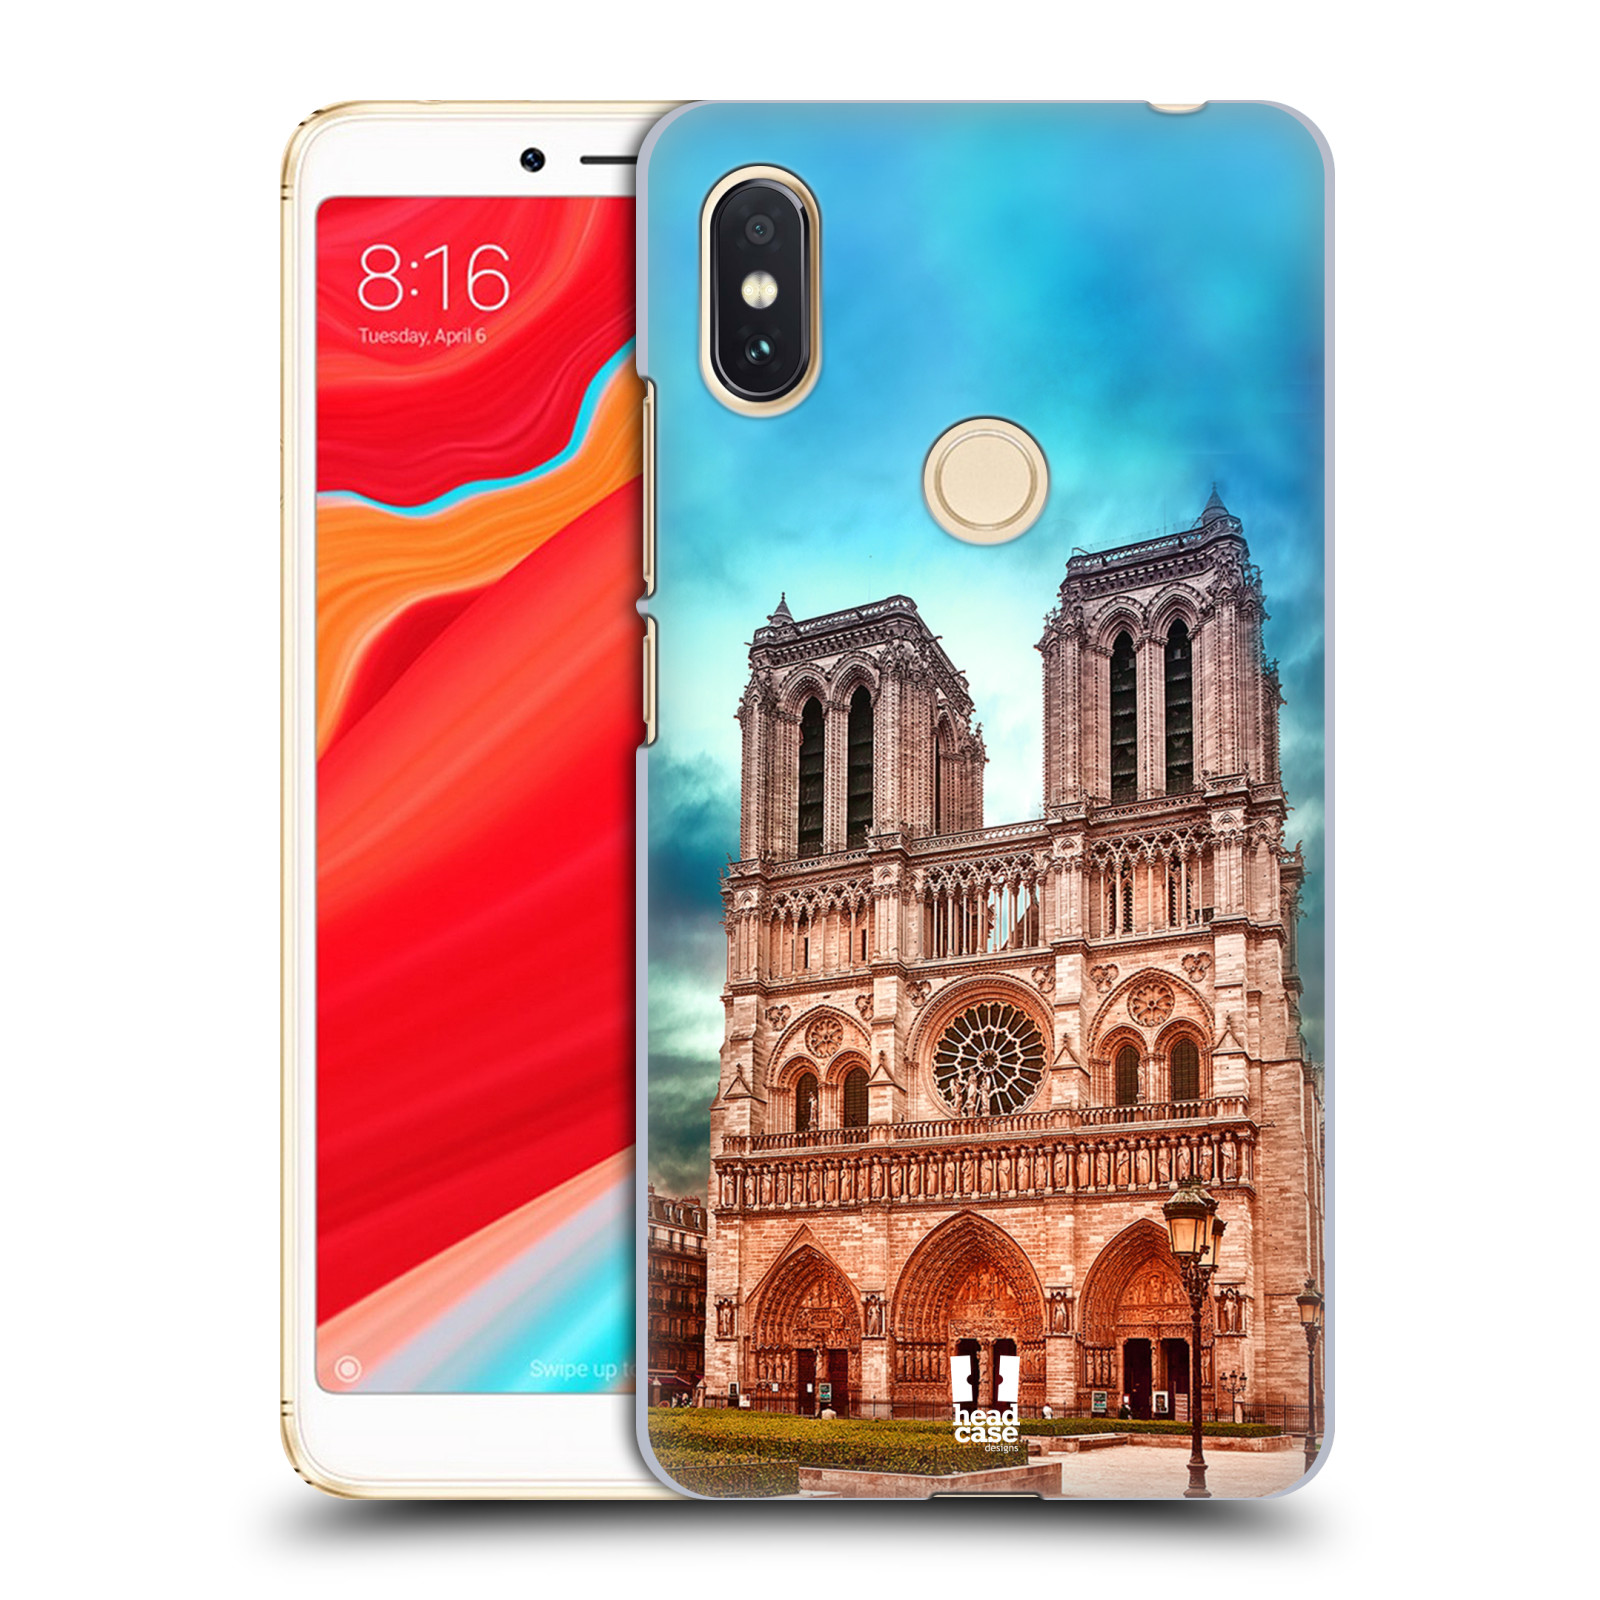 Pouzdro na mobil Xiaomi Redmi S2 - HEAD CASE - historická místa katedrála Notre Dame